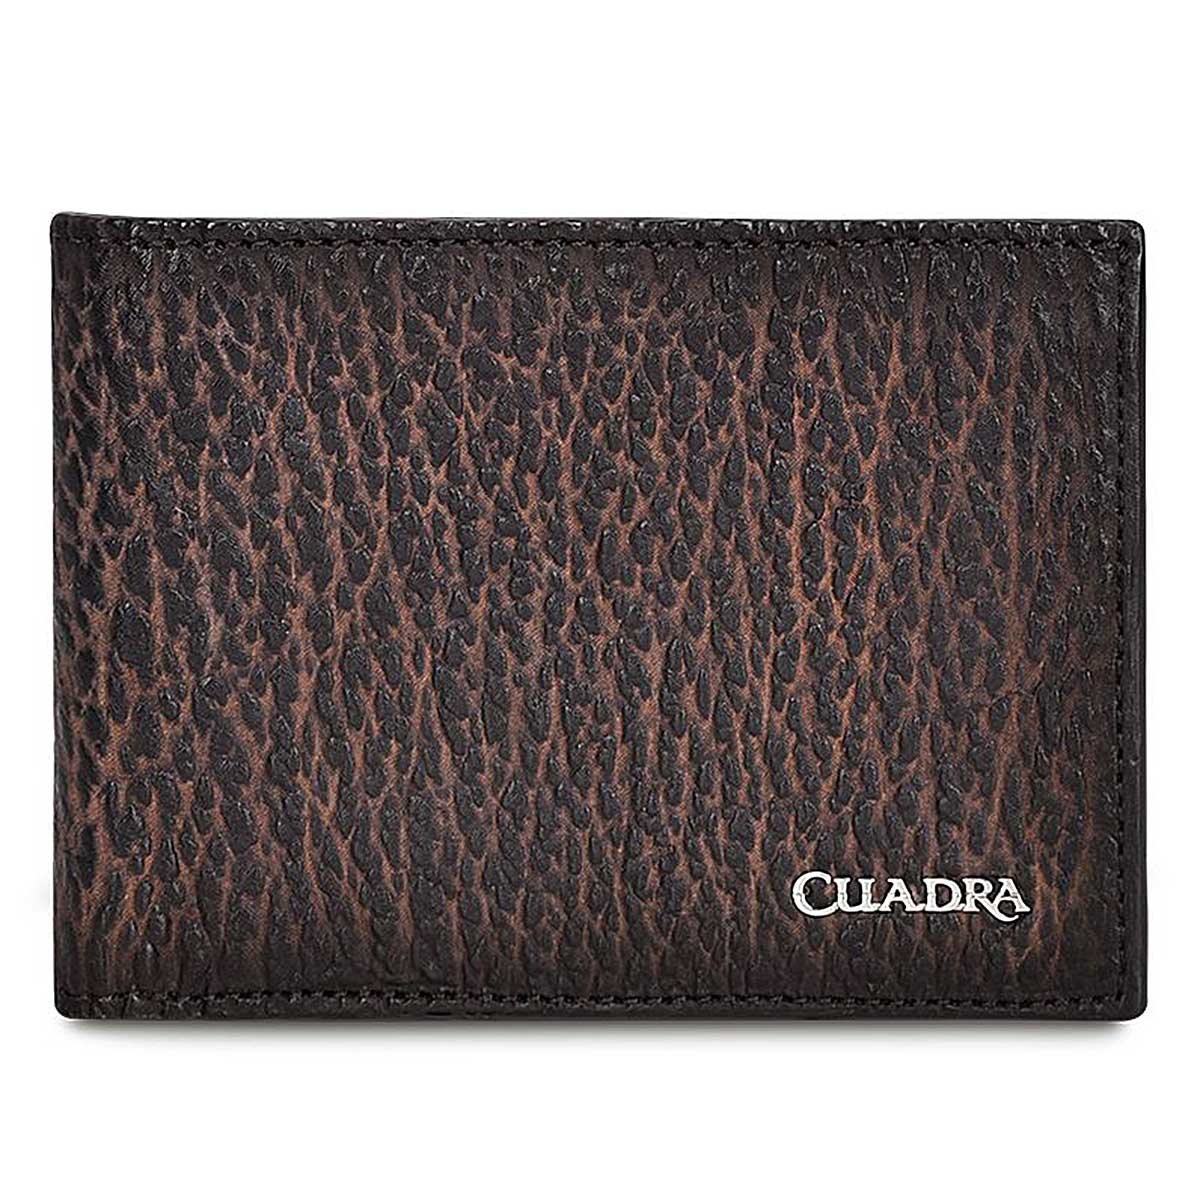 Handmade dark brown leather bifold wallet